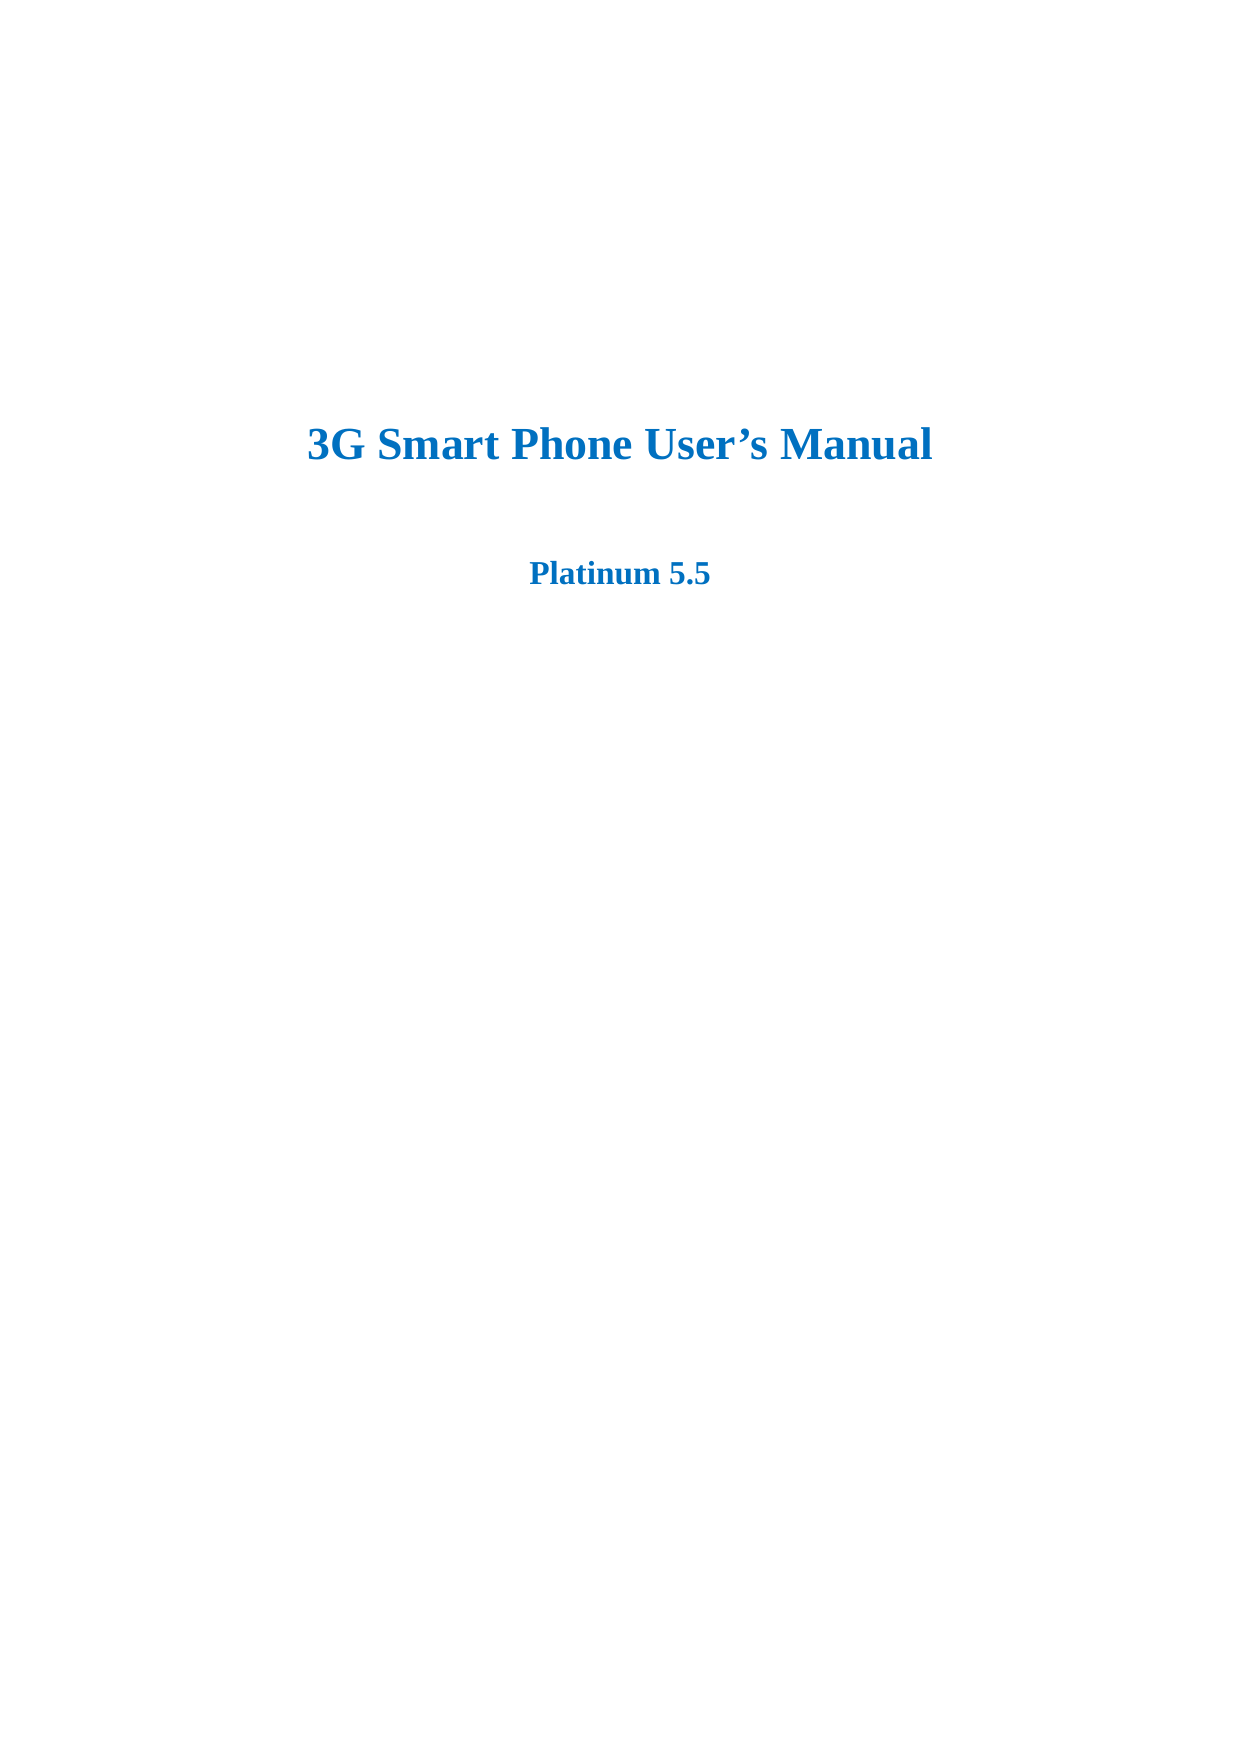       3G Smart Phone User’s Manual  Platinum 5.5                           